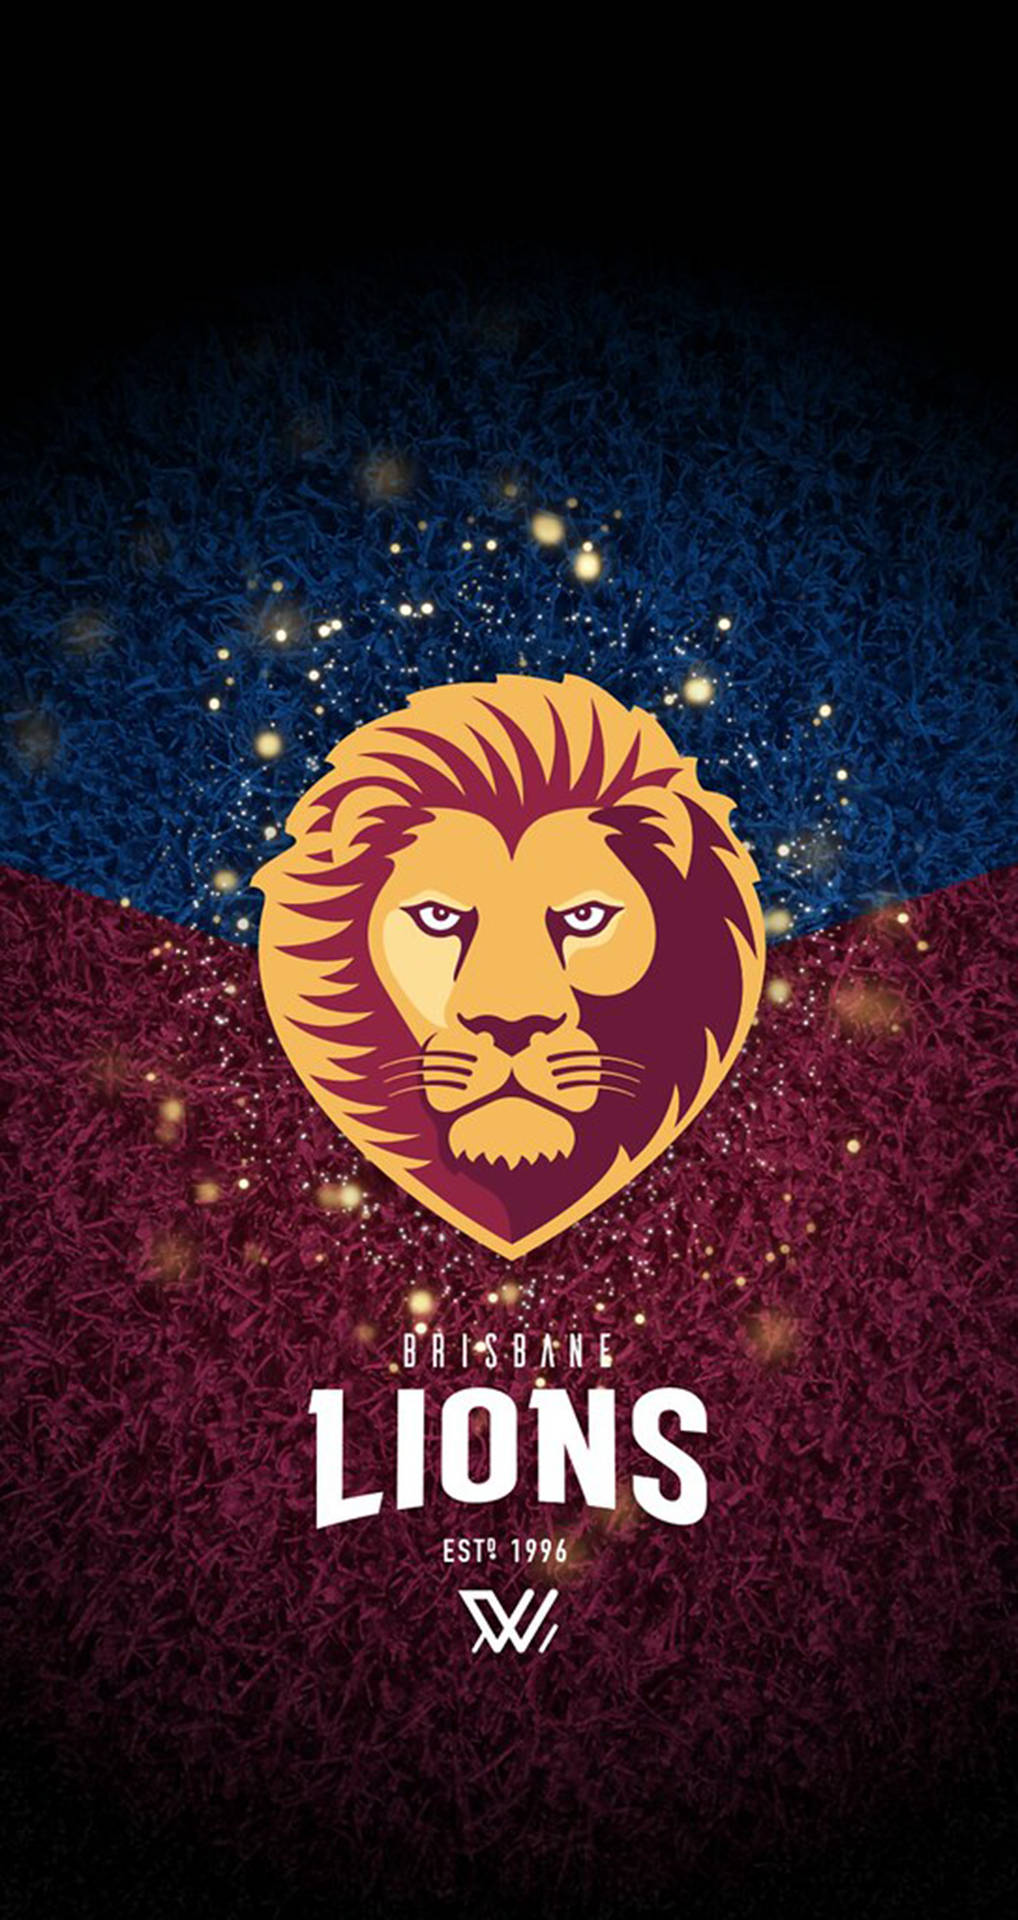 Afl Brisbane Lions